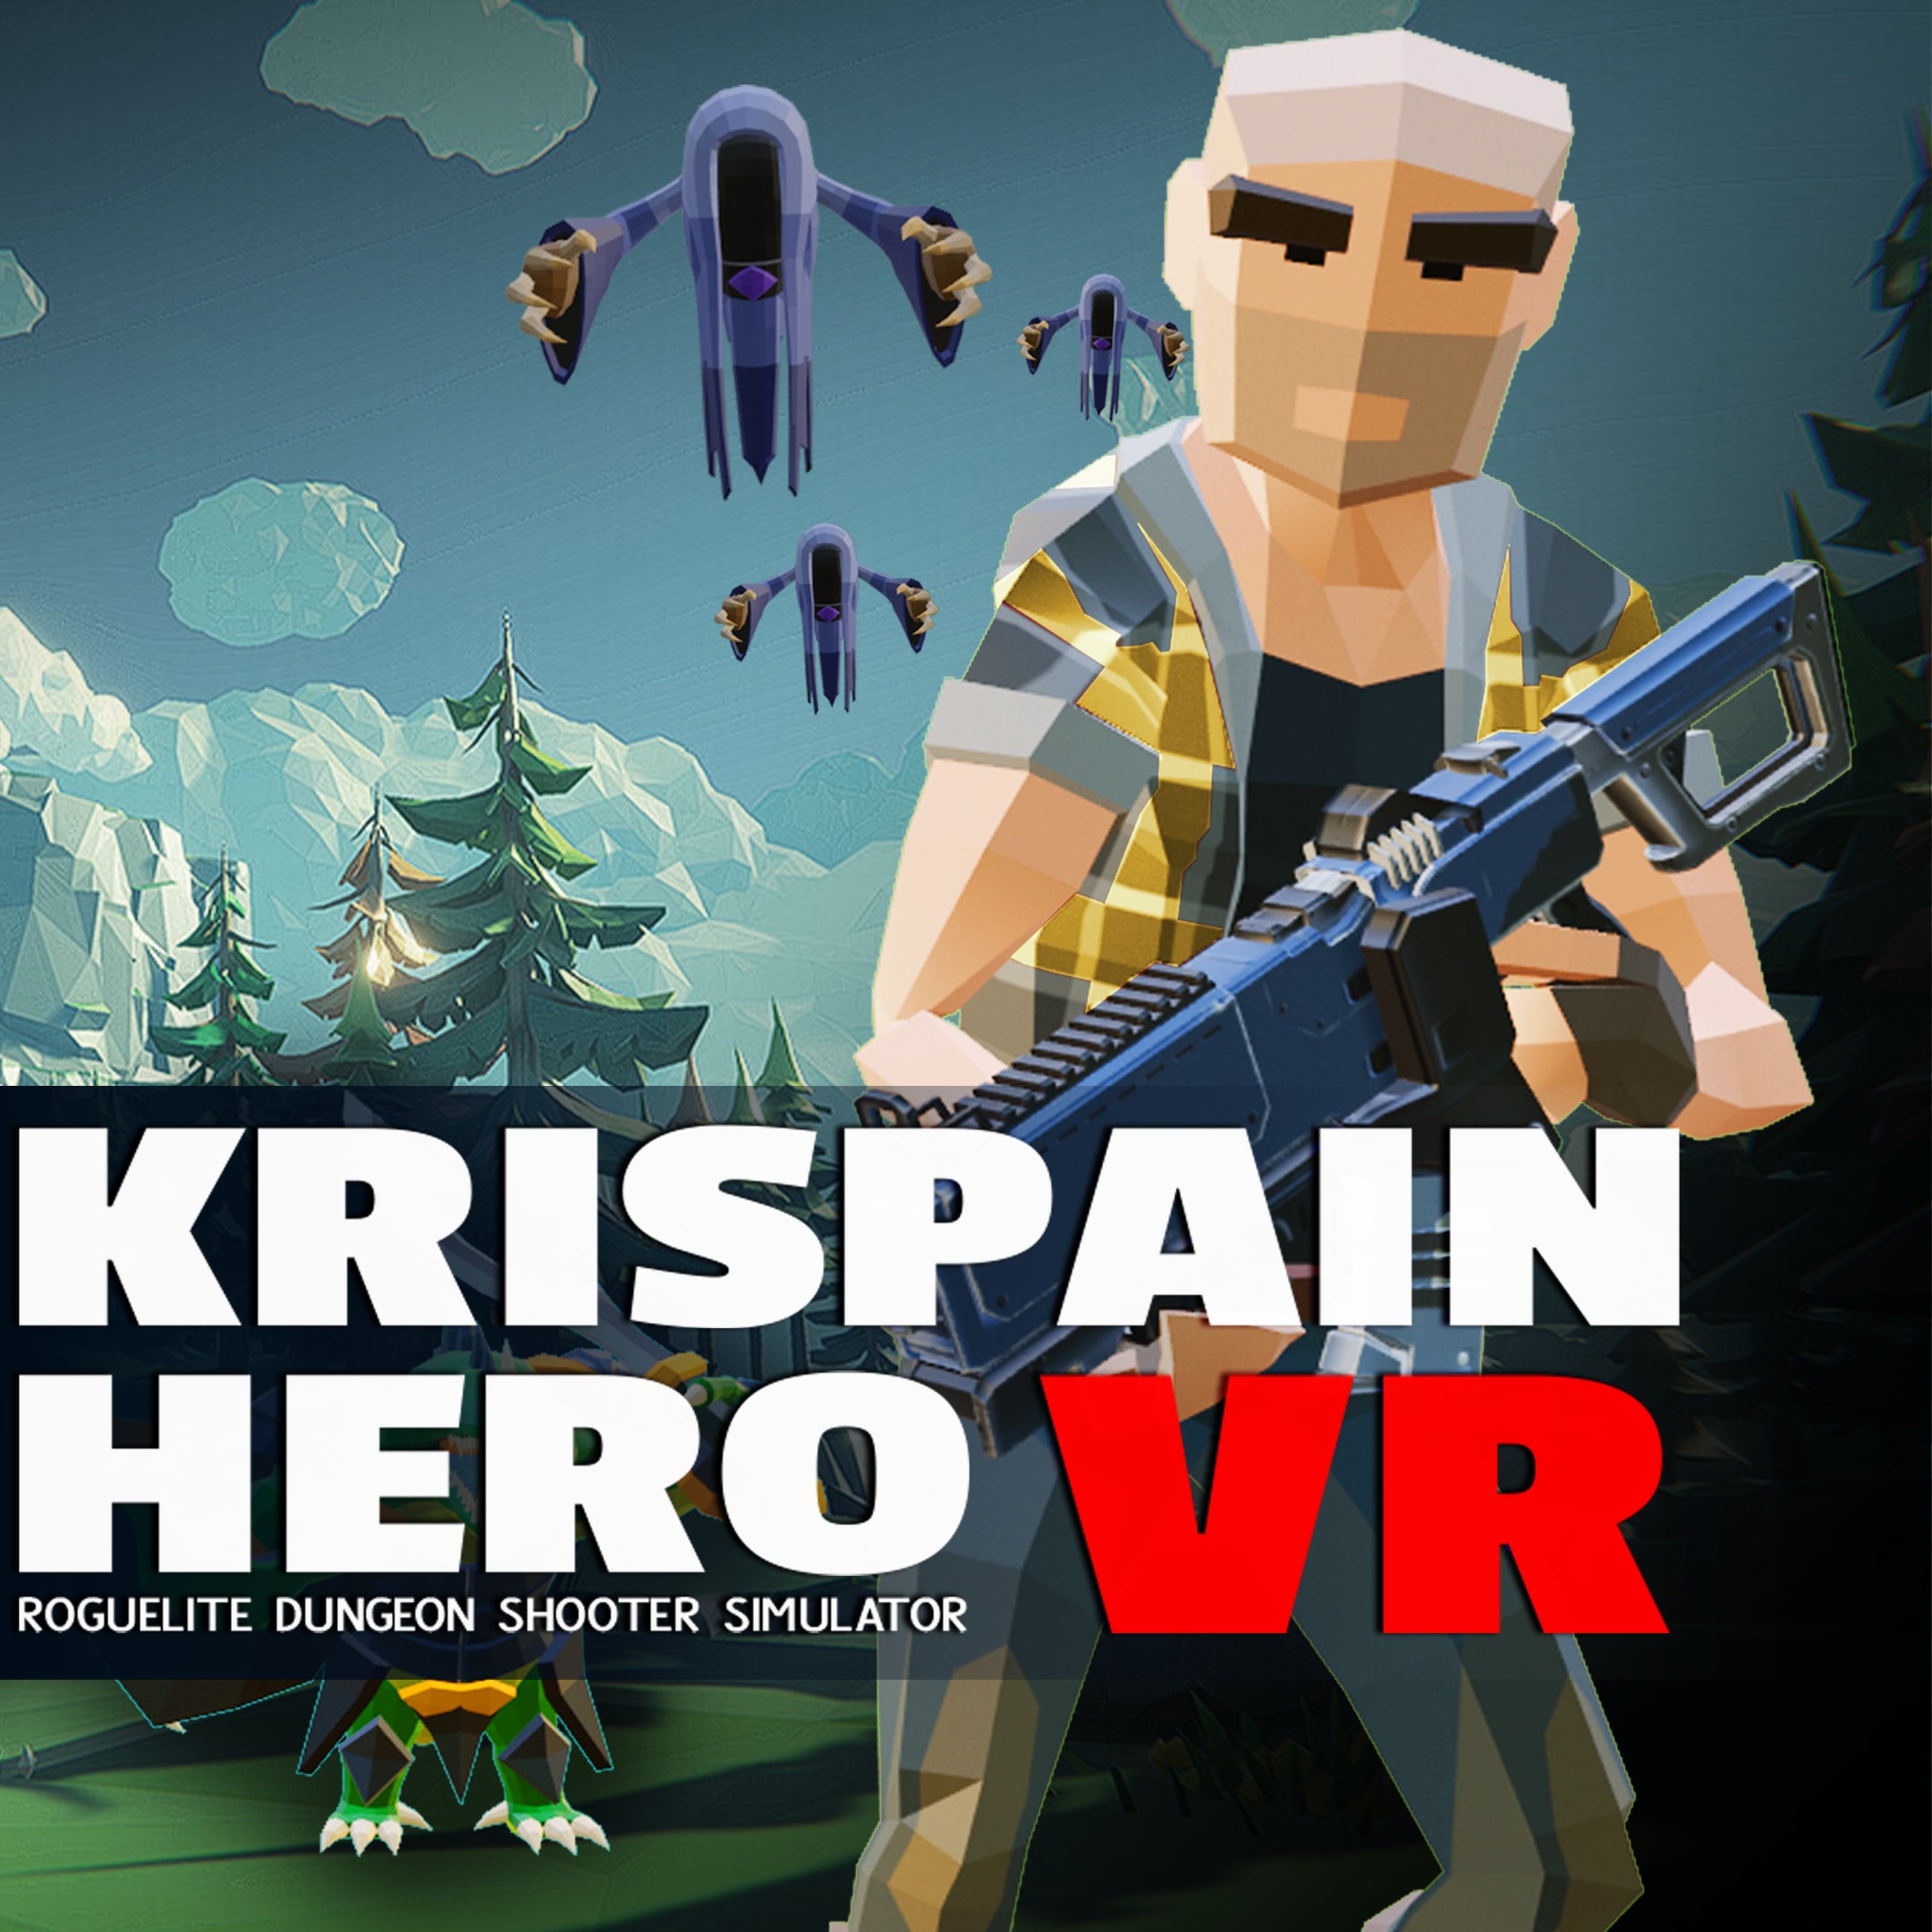 Krispain Hero VR Roguelite Dungeon Shooter Simulator